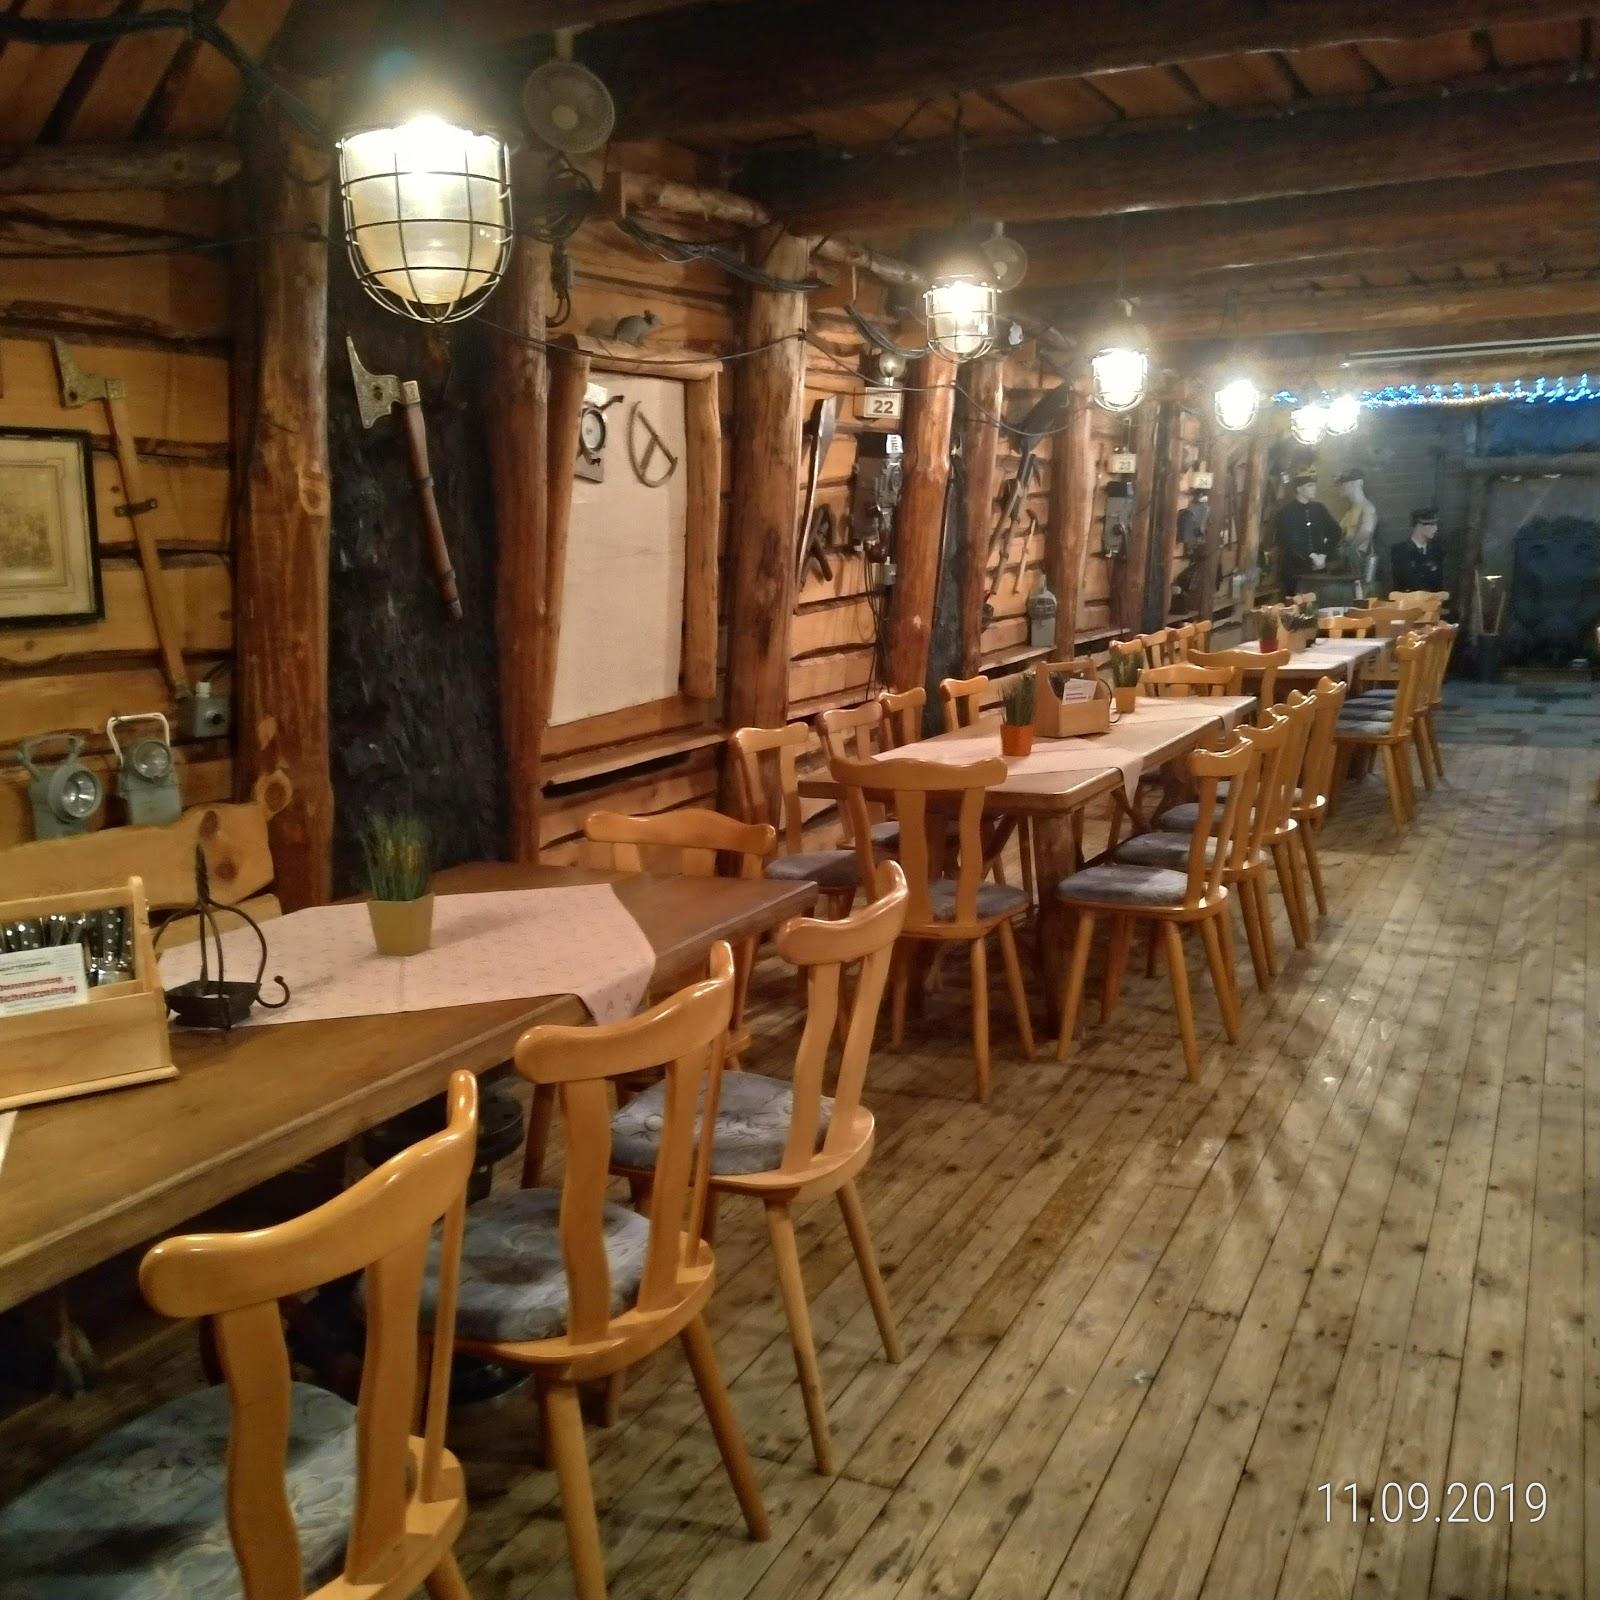 Restaurant "Schacht Barbara" in Gräfenhainichen